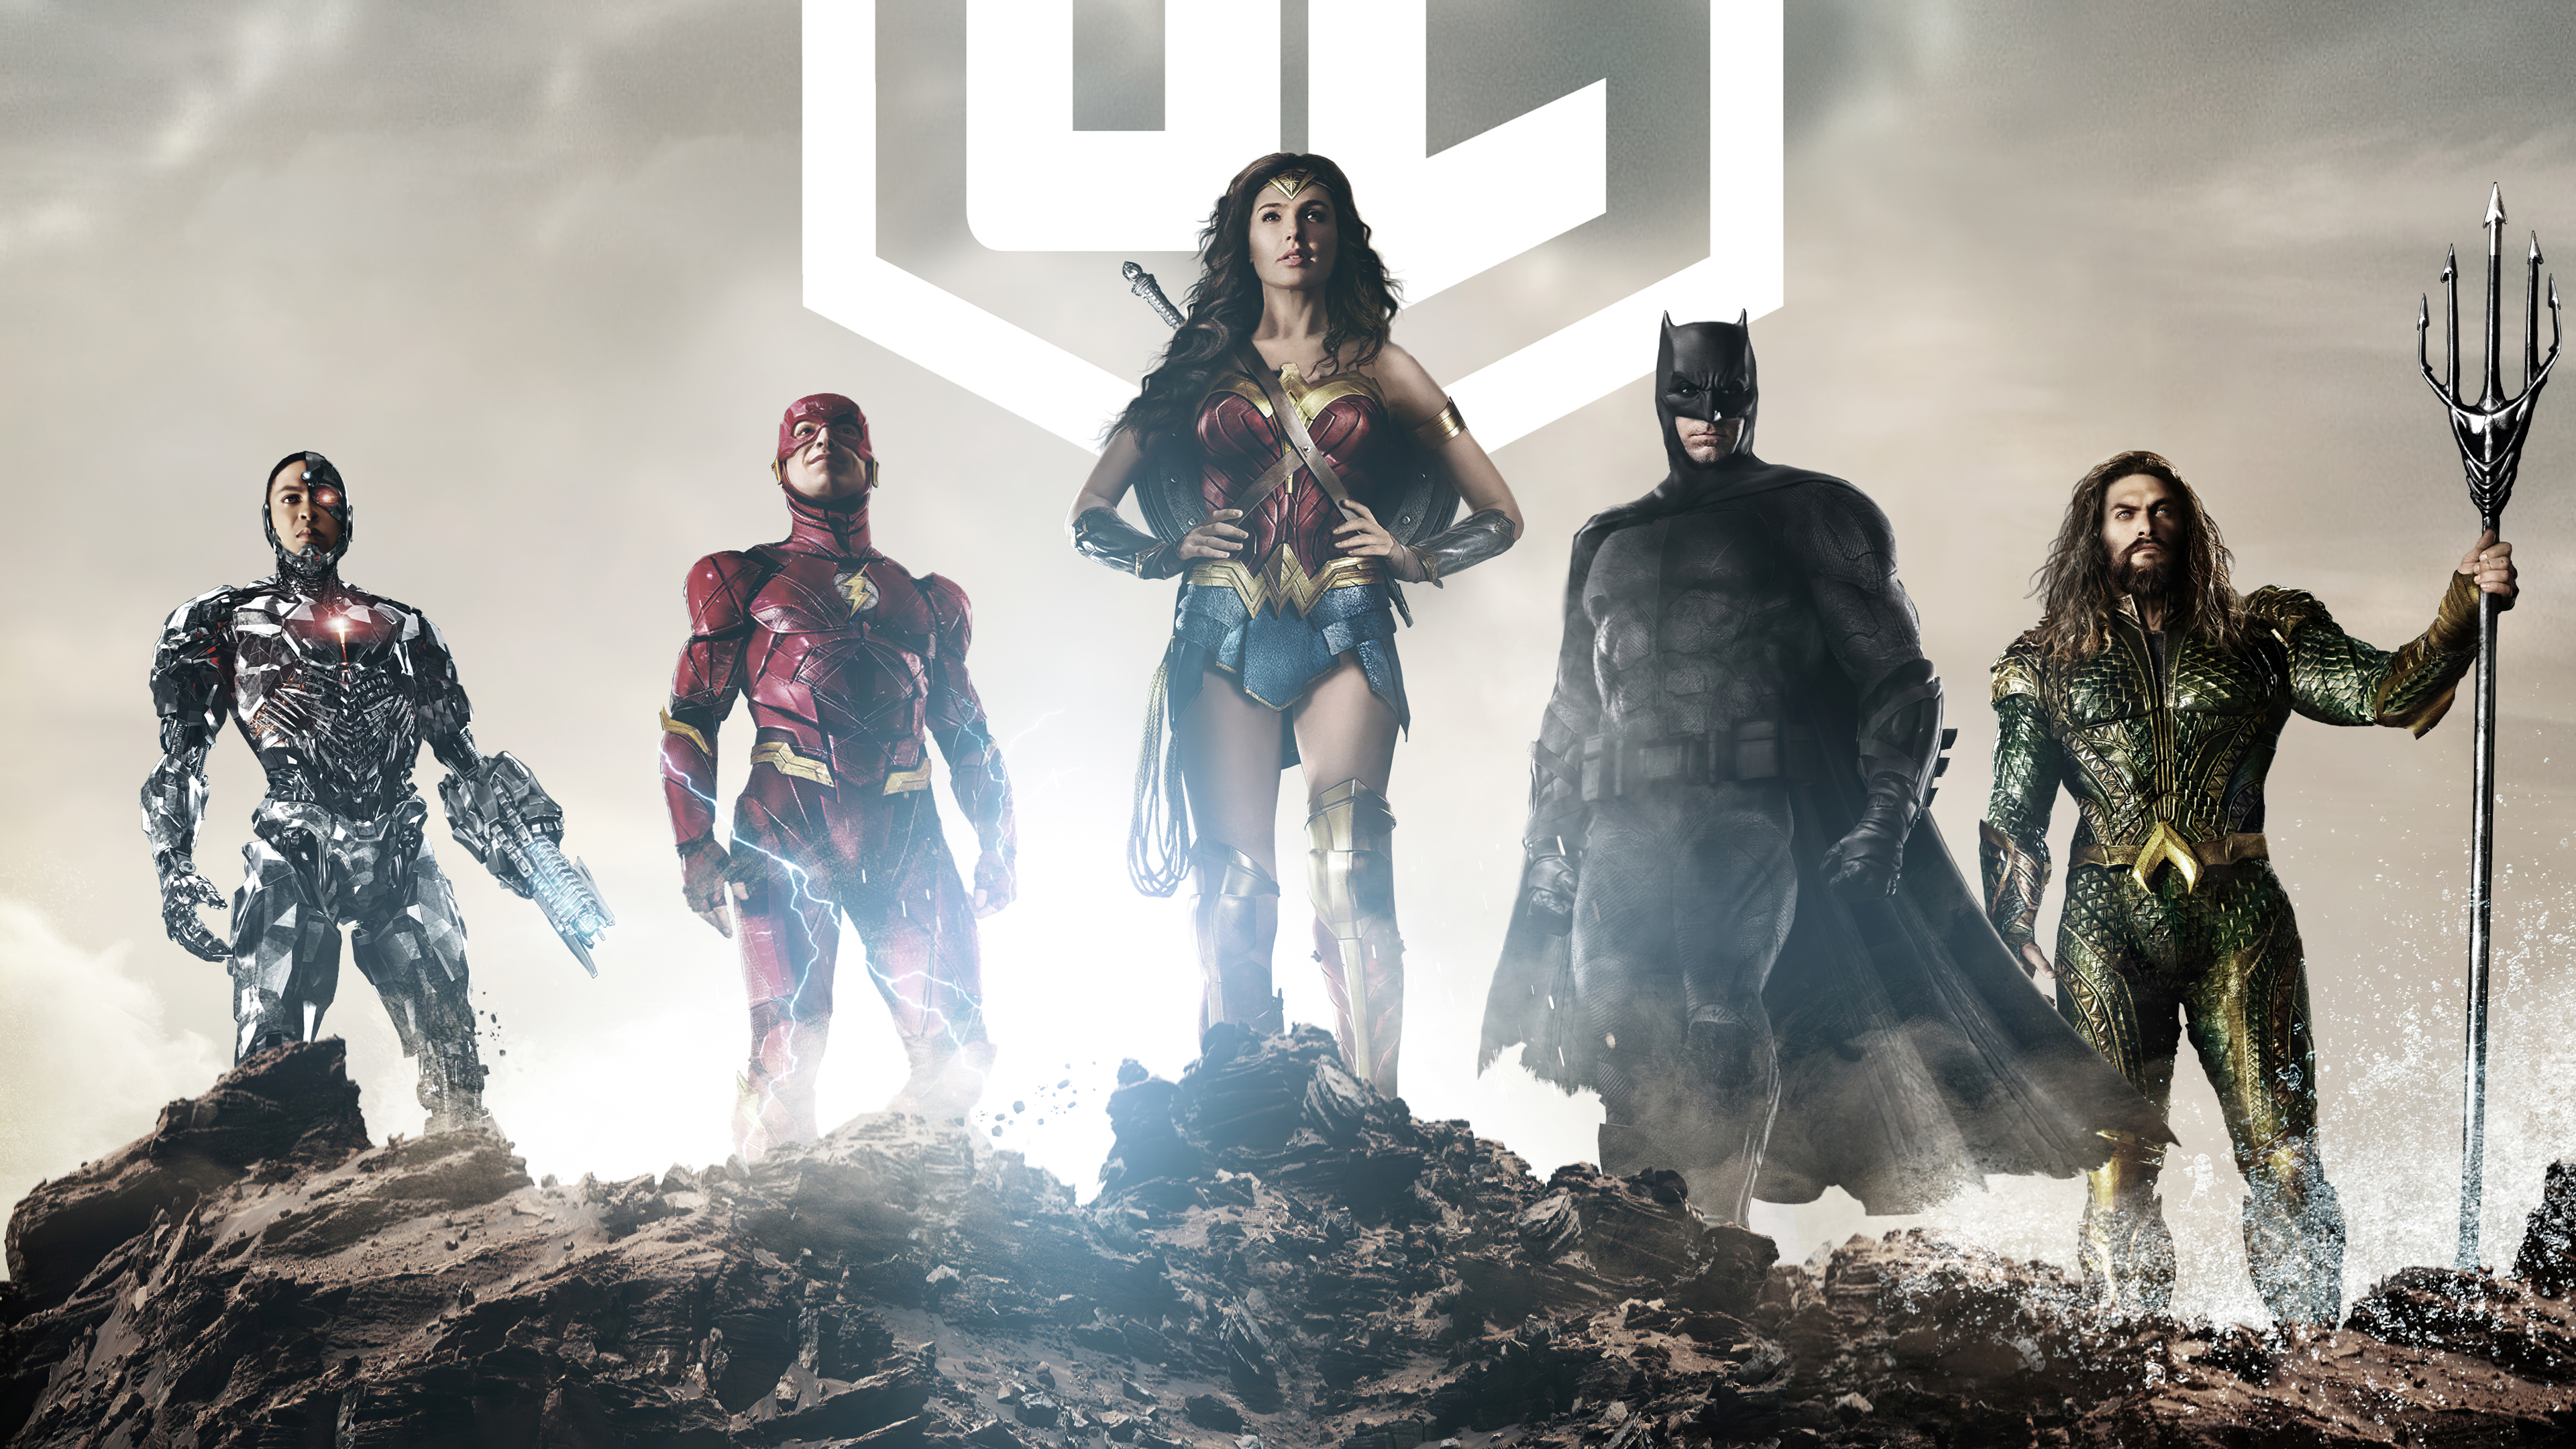 Free download wallpaper Batman, Flash, Movie, Aquaman, Wonder Woman, Cyborg (Dc Comics), Justice League, Zack Snyder's Justice League on your PC desktop